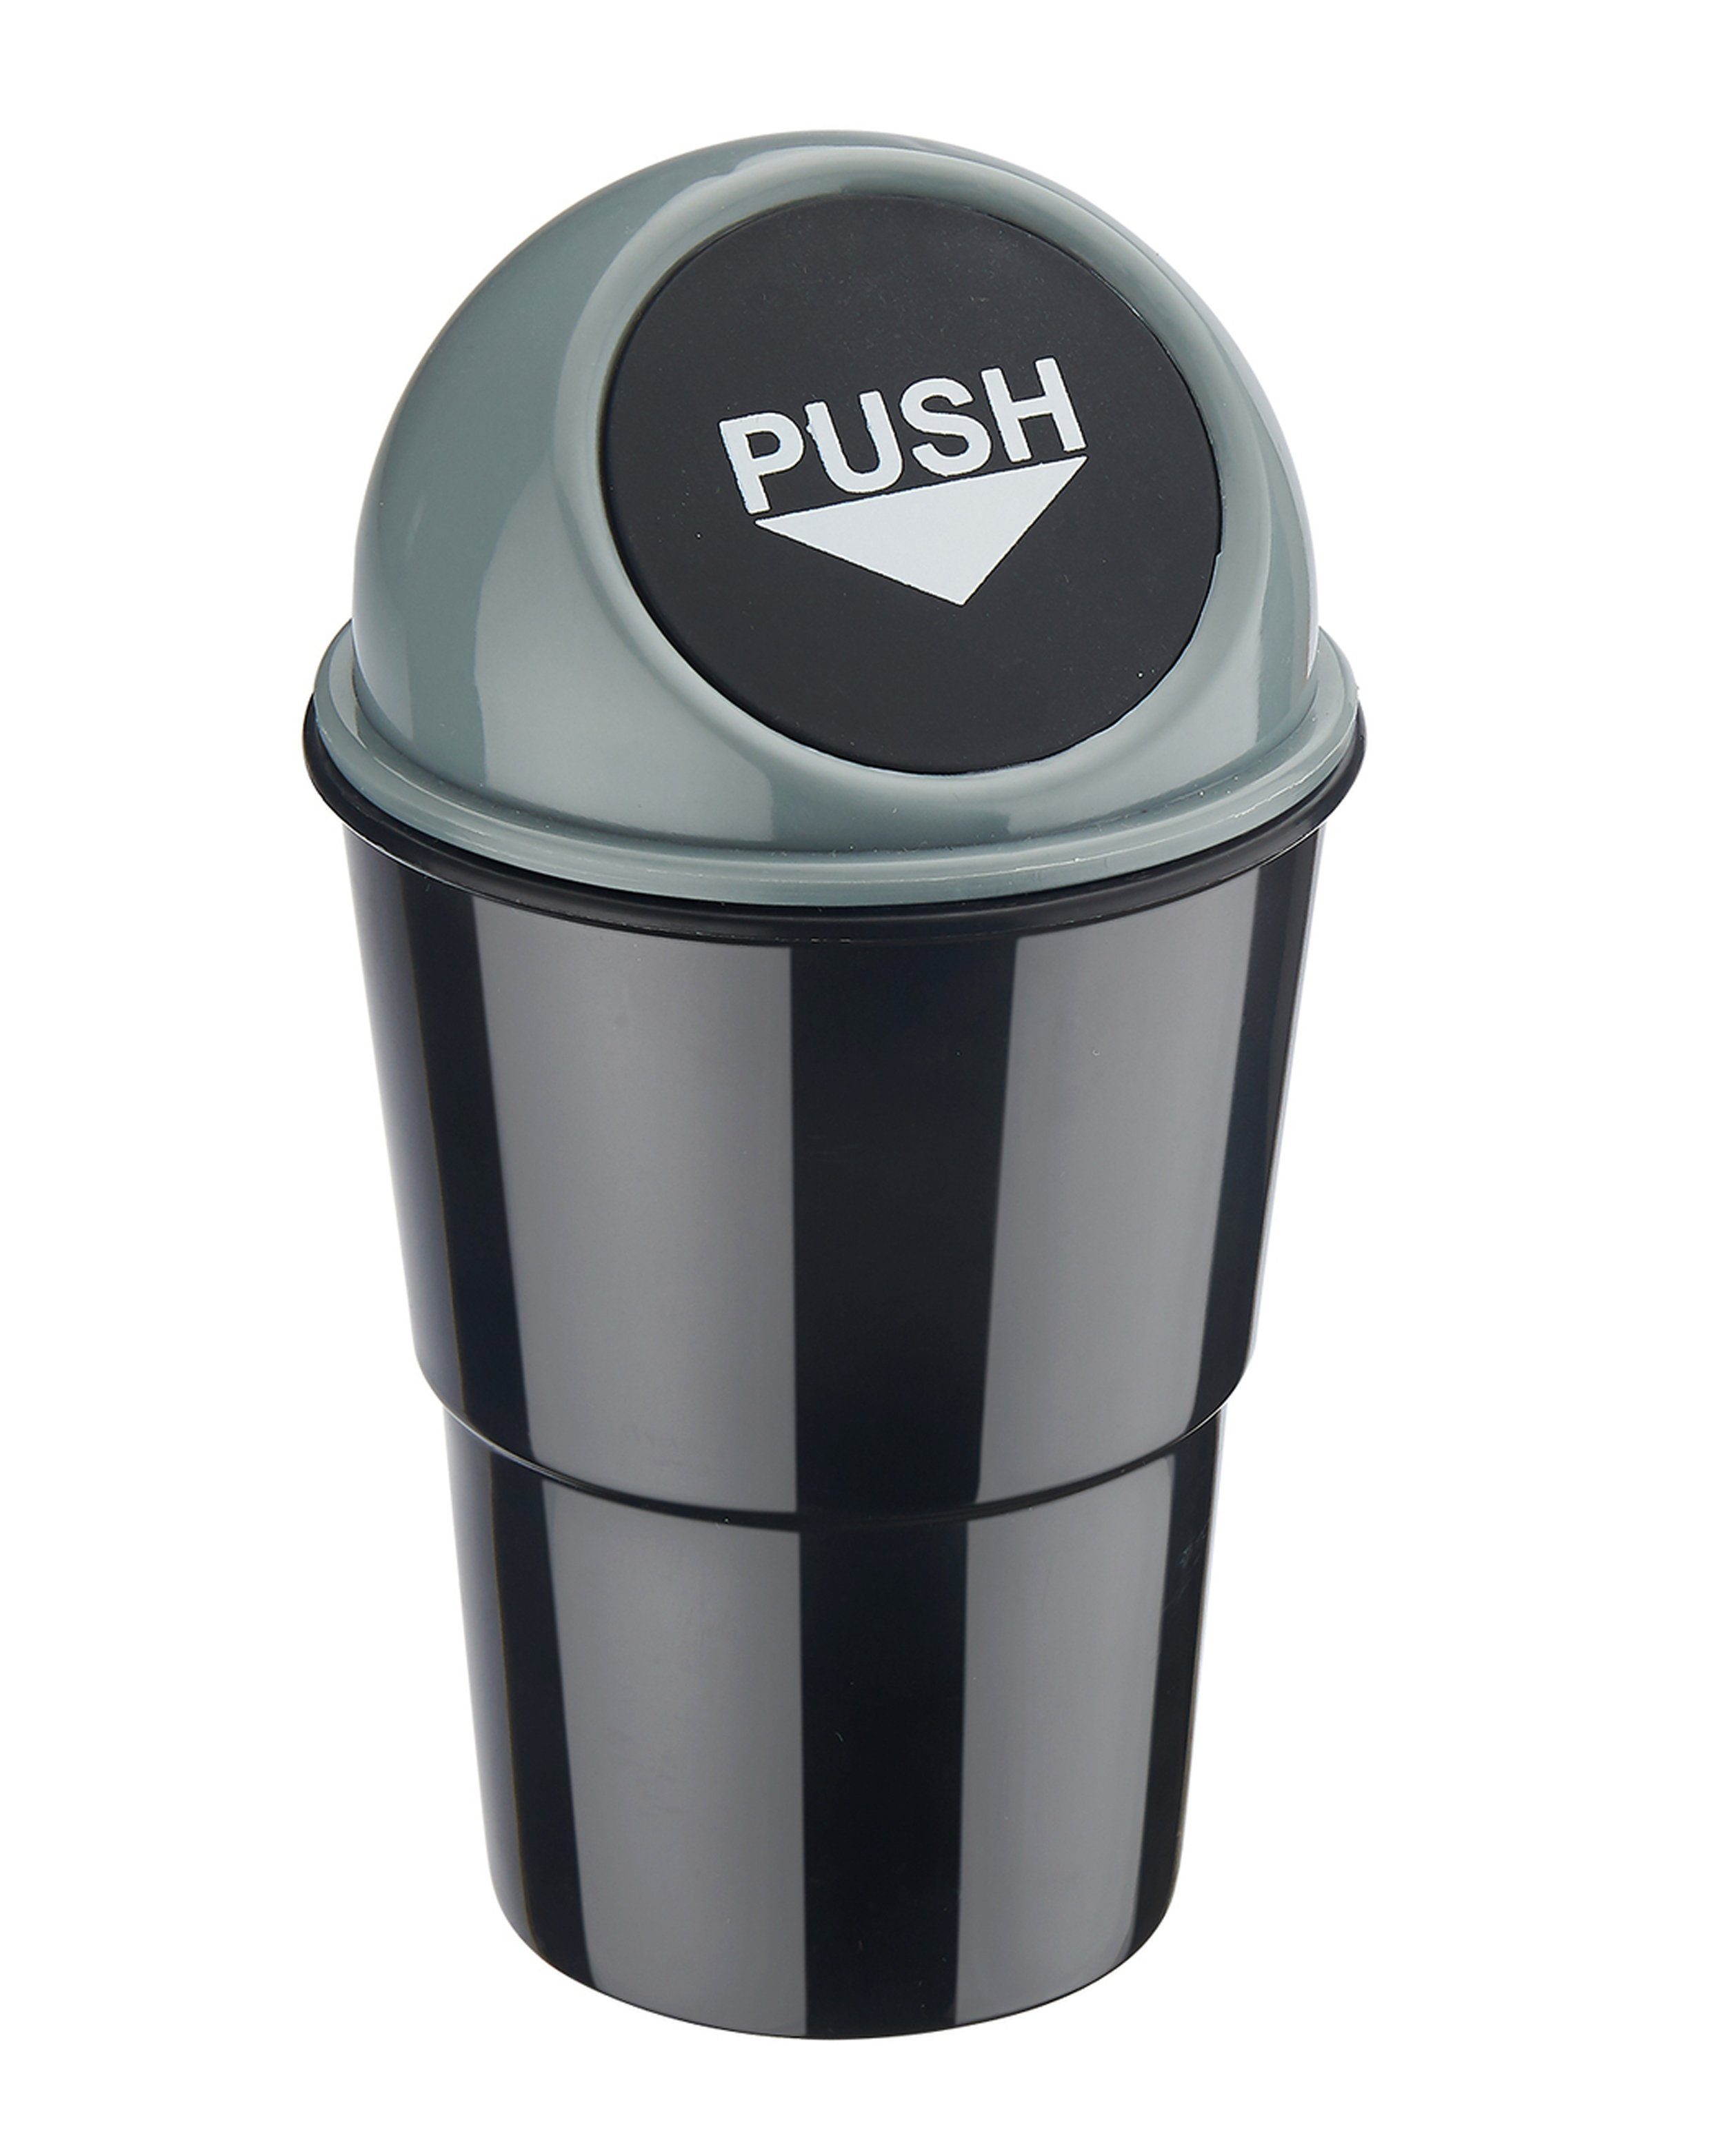 Push-Deckel für MÜLLEIMER Abfalleimer CHAMP Getränkehalterung 1 PKW Mini Automülleimer (Grau) Mülleimer mit KFZ Auto